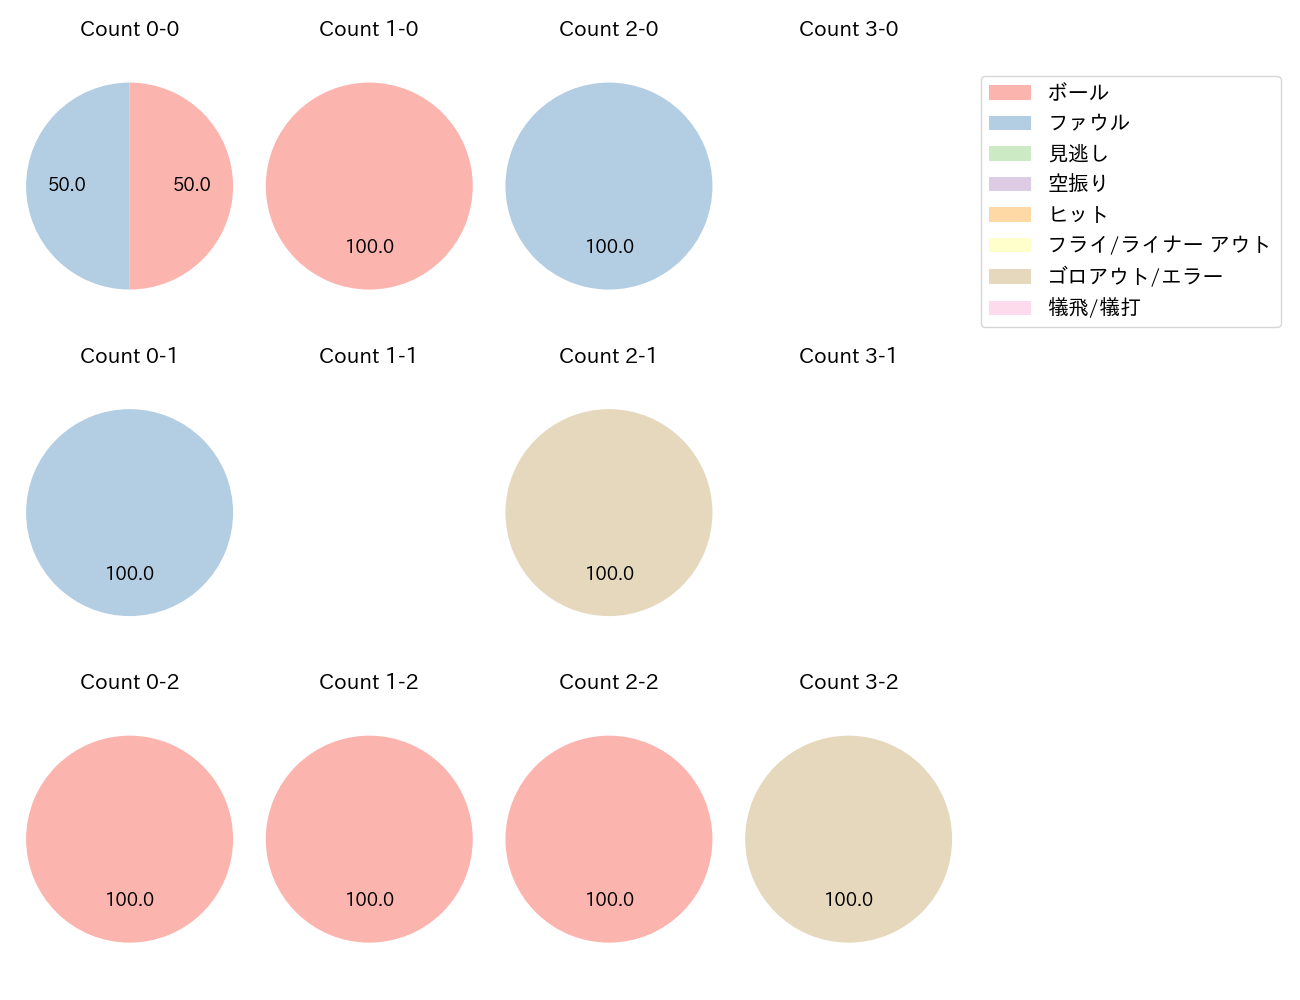 奥川 恭伸の球数分布(2022年オープン戦)